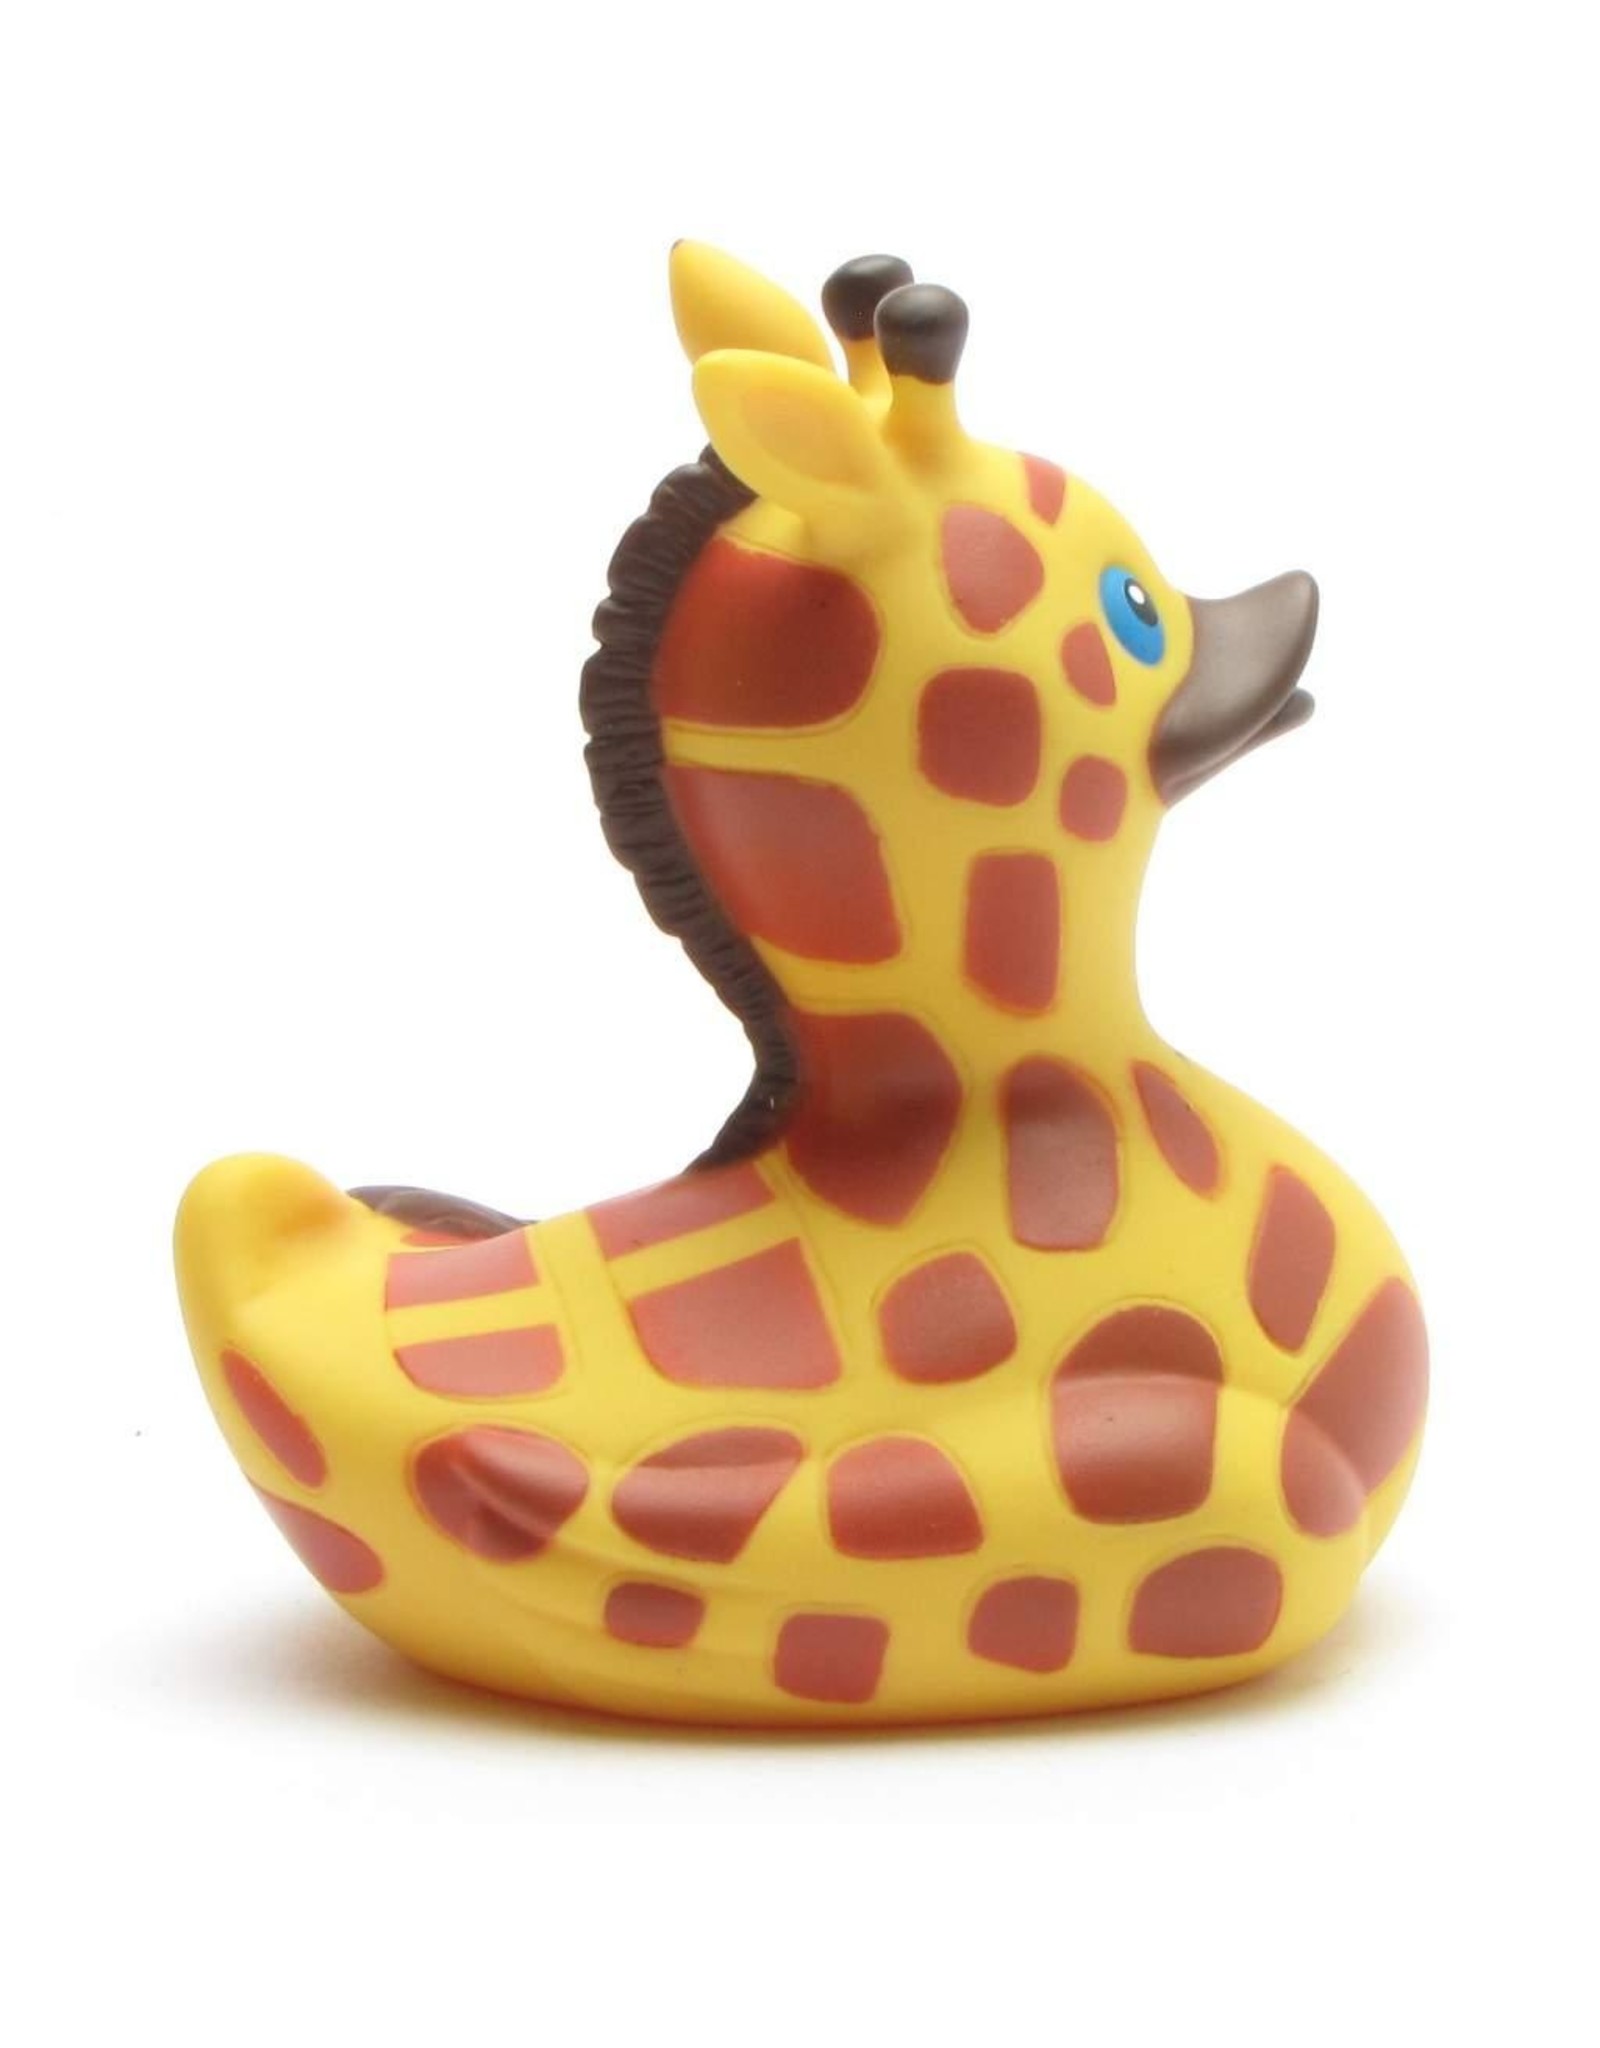 Canard La Girafe